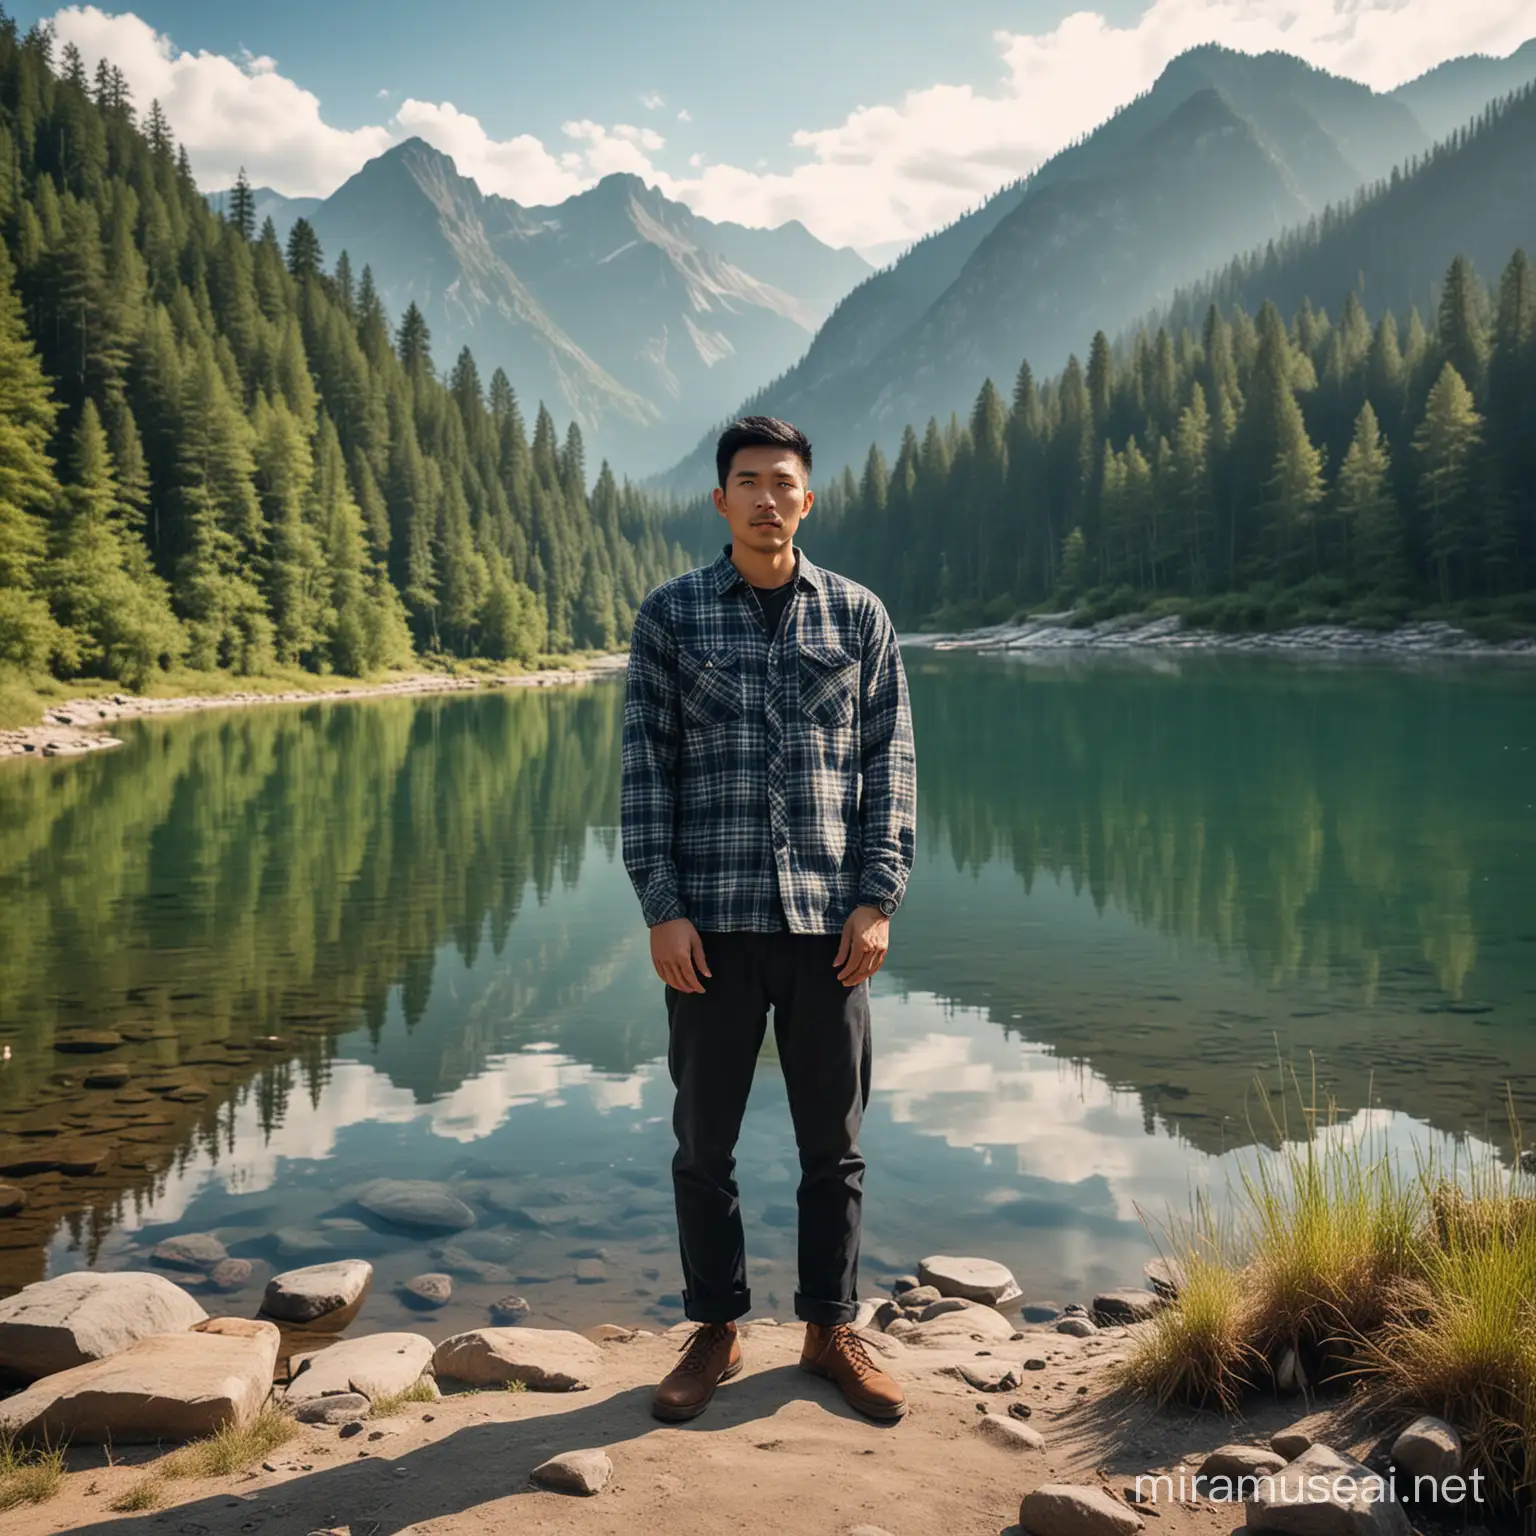 Seorang pria asia, kemeja flanel, dan celana panjang, berdiri di samping danau yang indah, mengelilingi hutan dan gunung, foto ultra hd